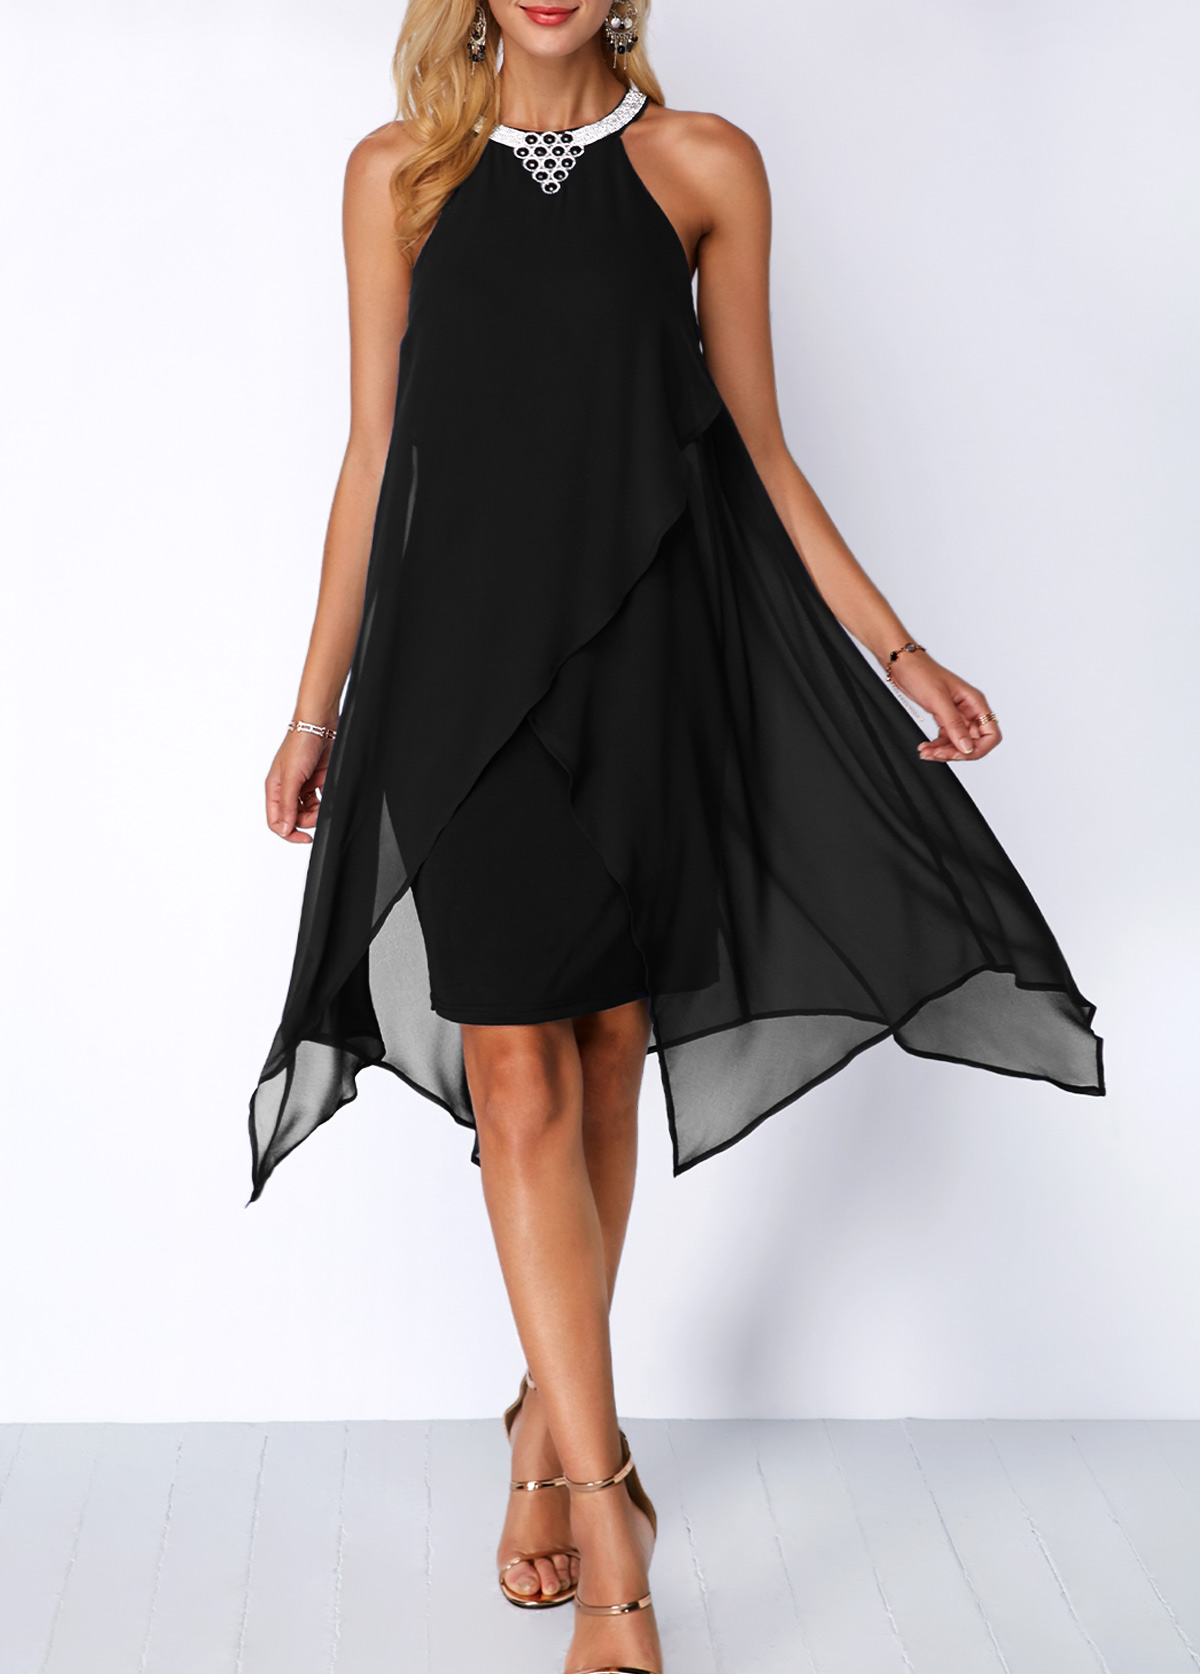 Embellished Neck Chiffon Overlay Black Dress